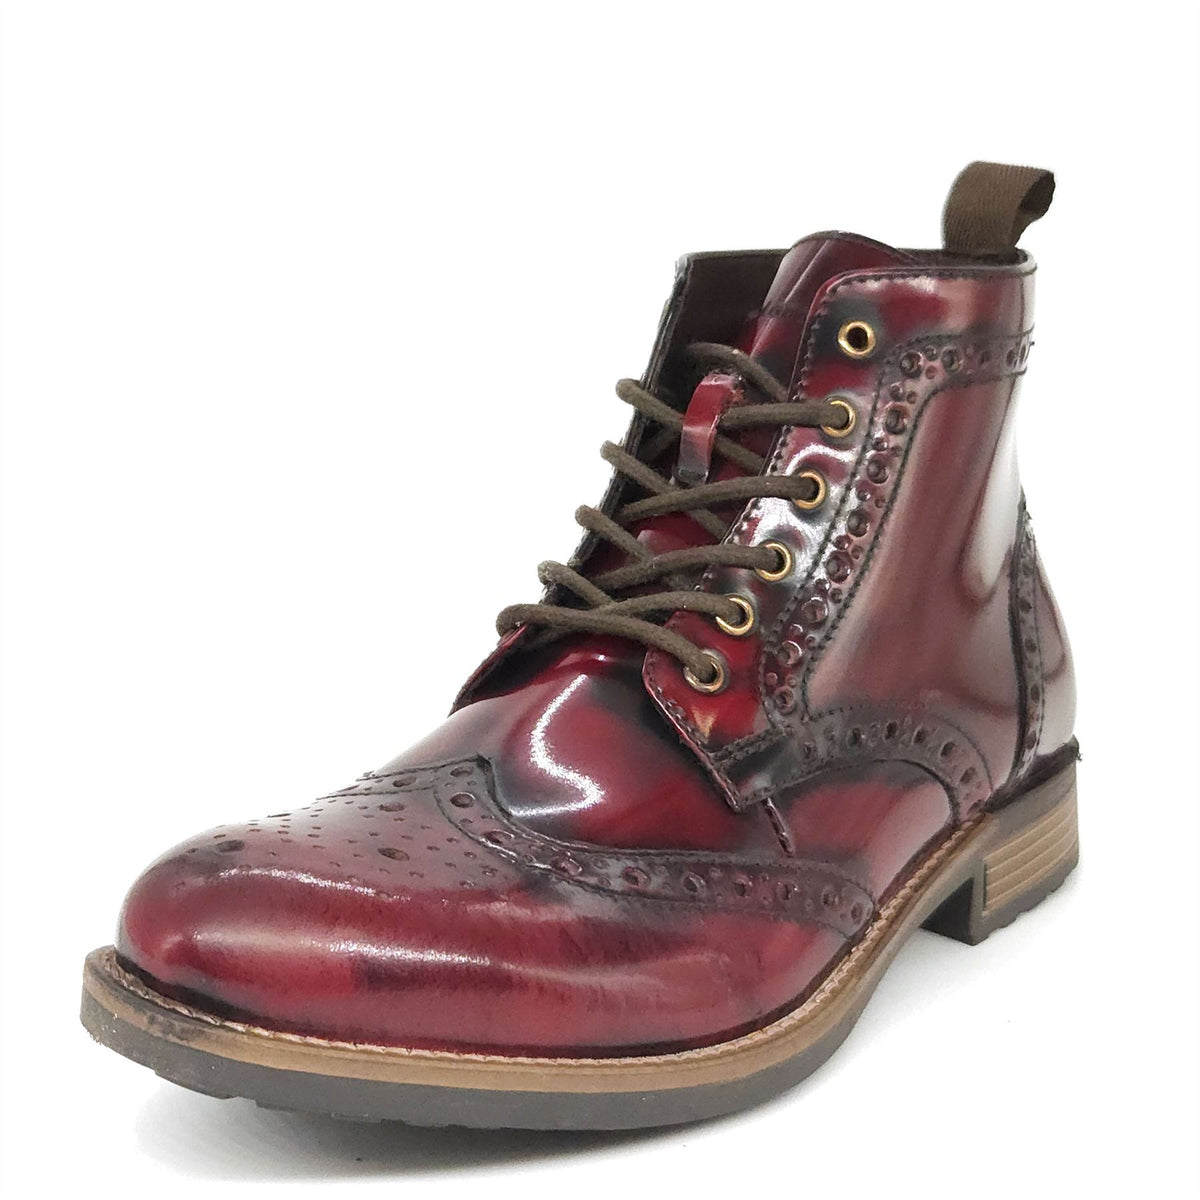 HX London Kingston Brogue Lace Up Leather Boots